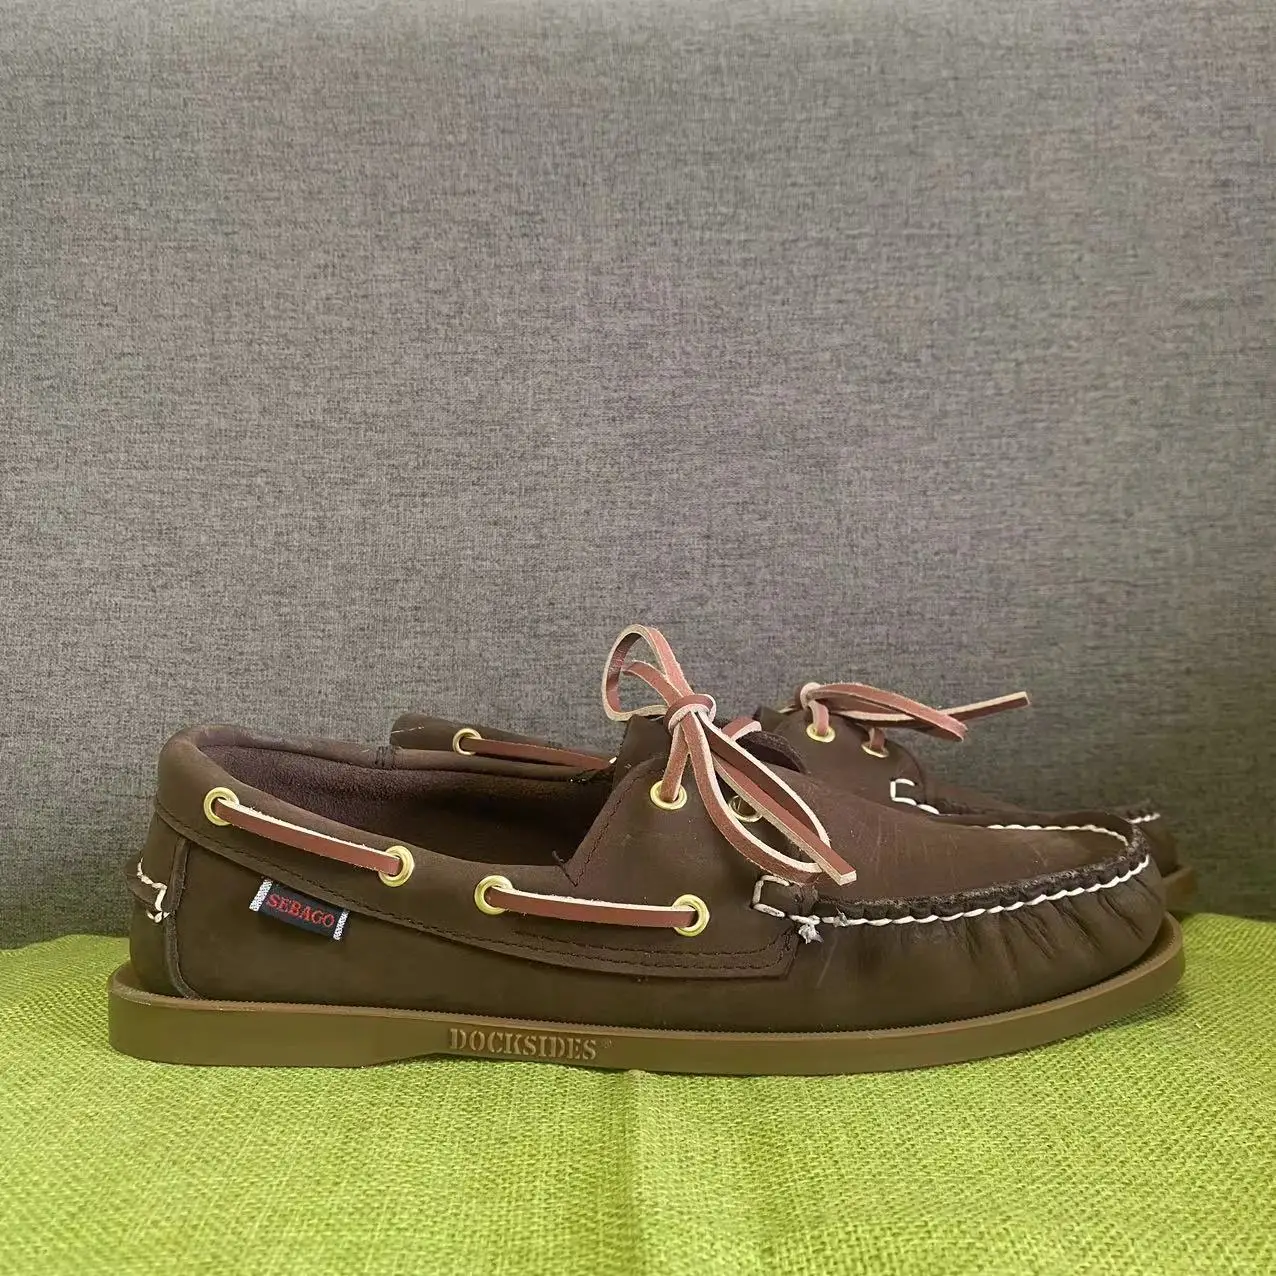 

Men Homme Authentic Sebago Docksides Shoes - Premium Leather Moc Toe Lace Up Boat Shoes 123A